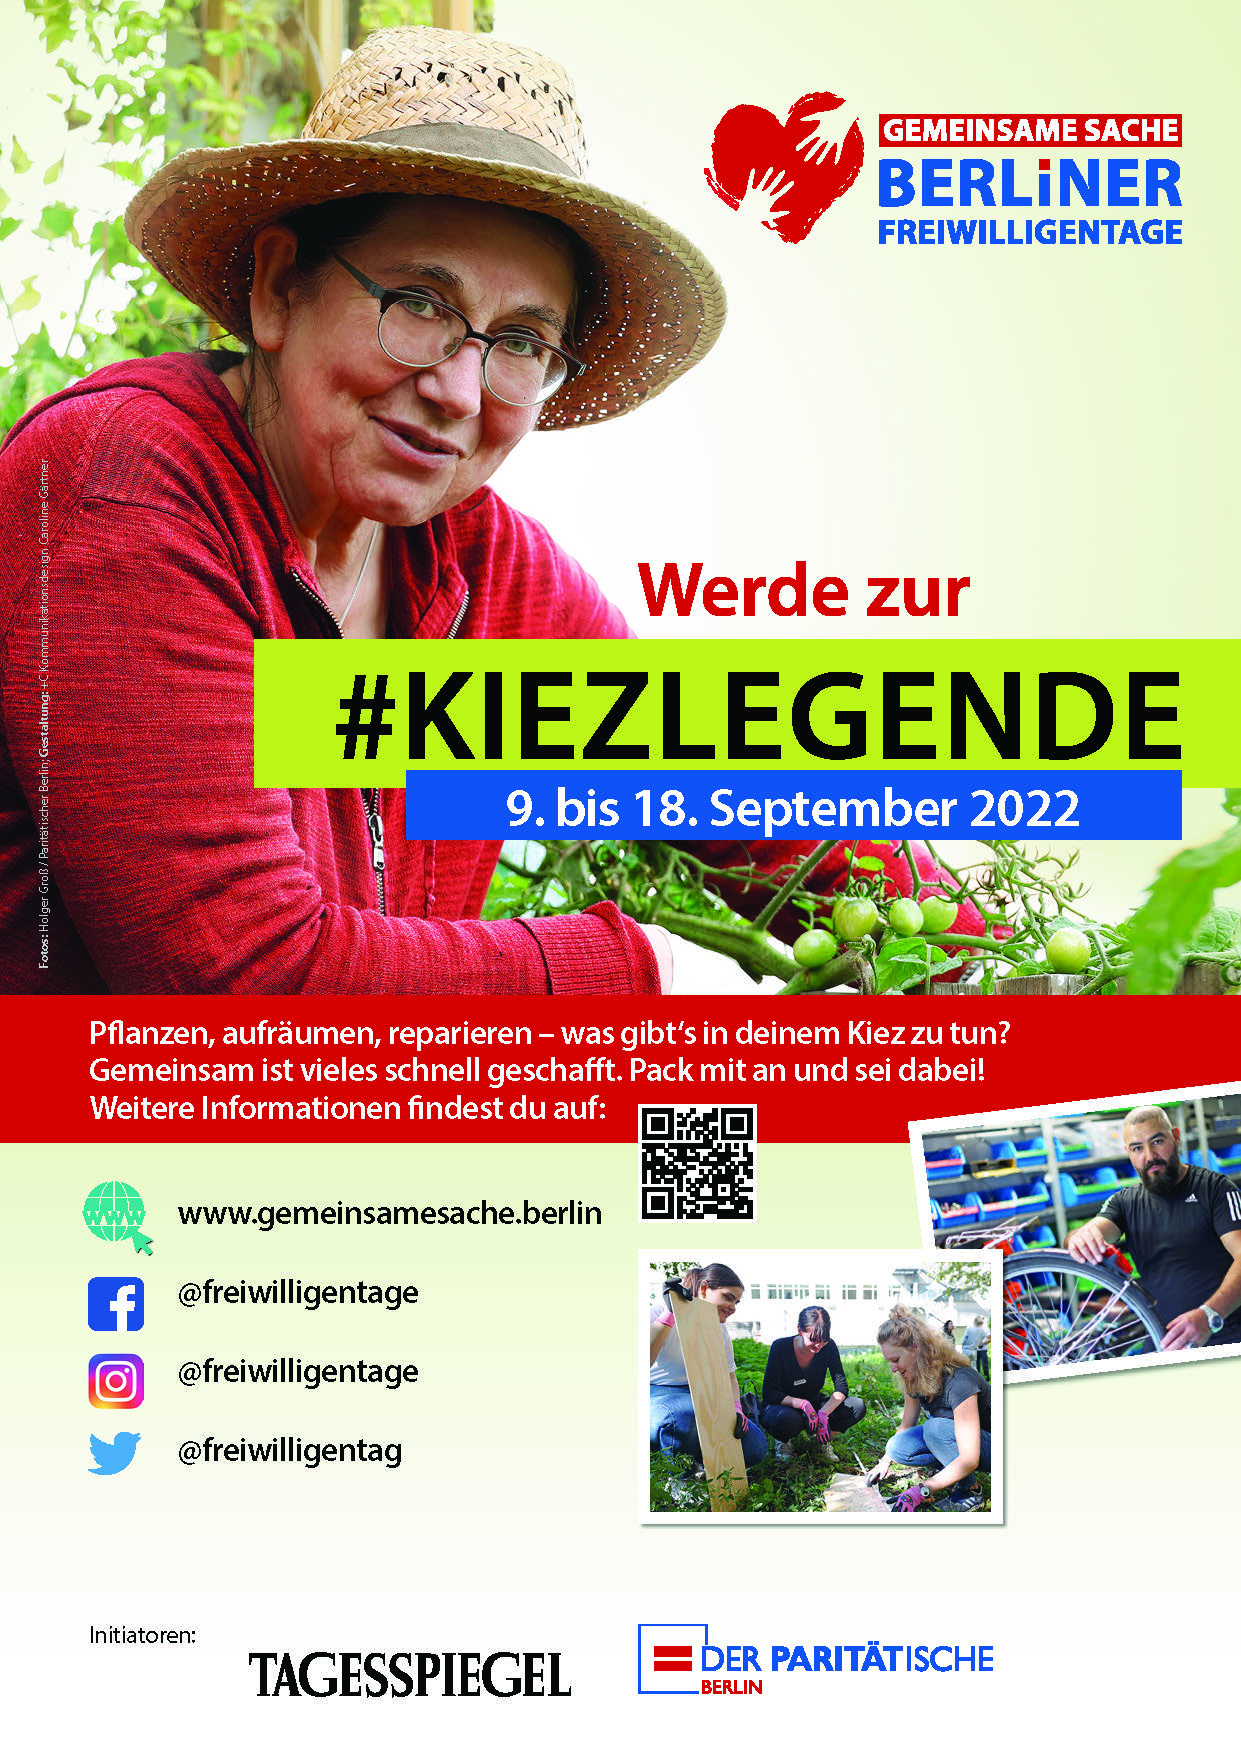 Gemeinsame Sache - Berliner Freiwilligentage 2022